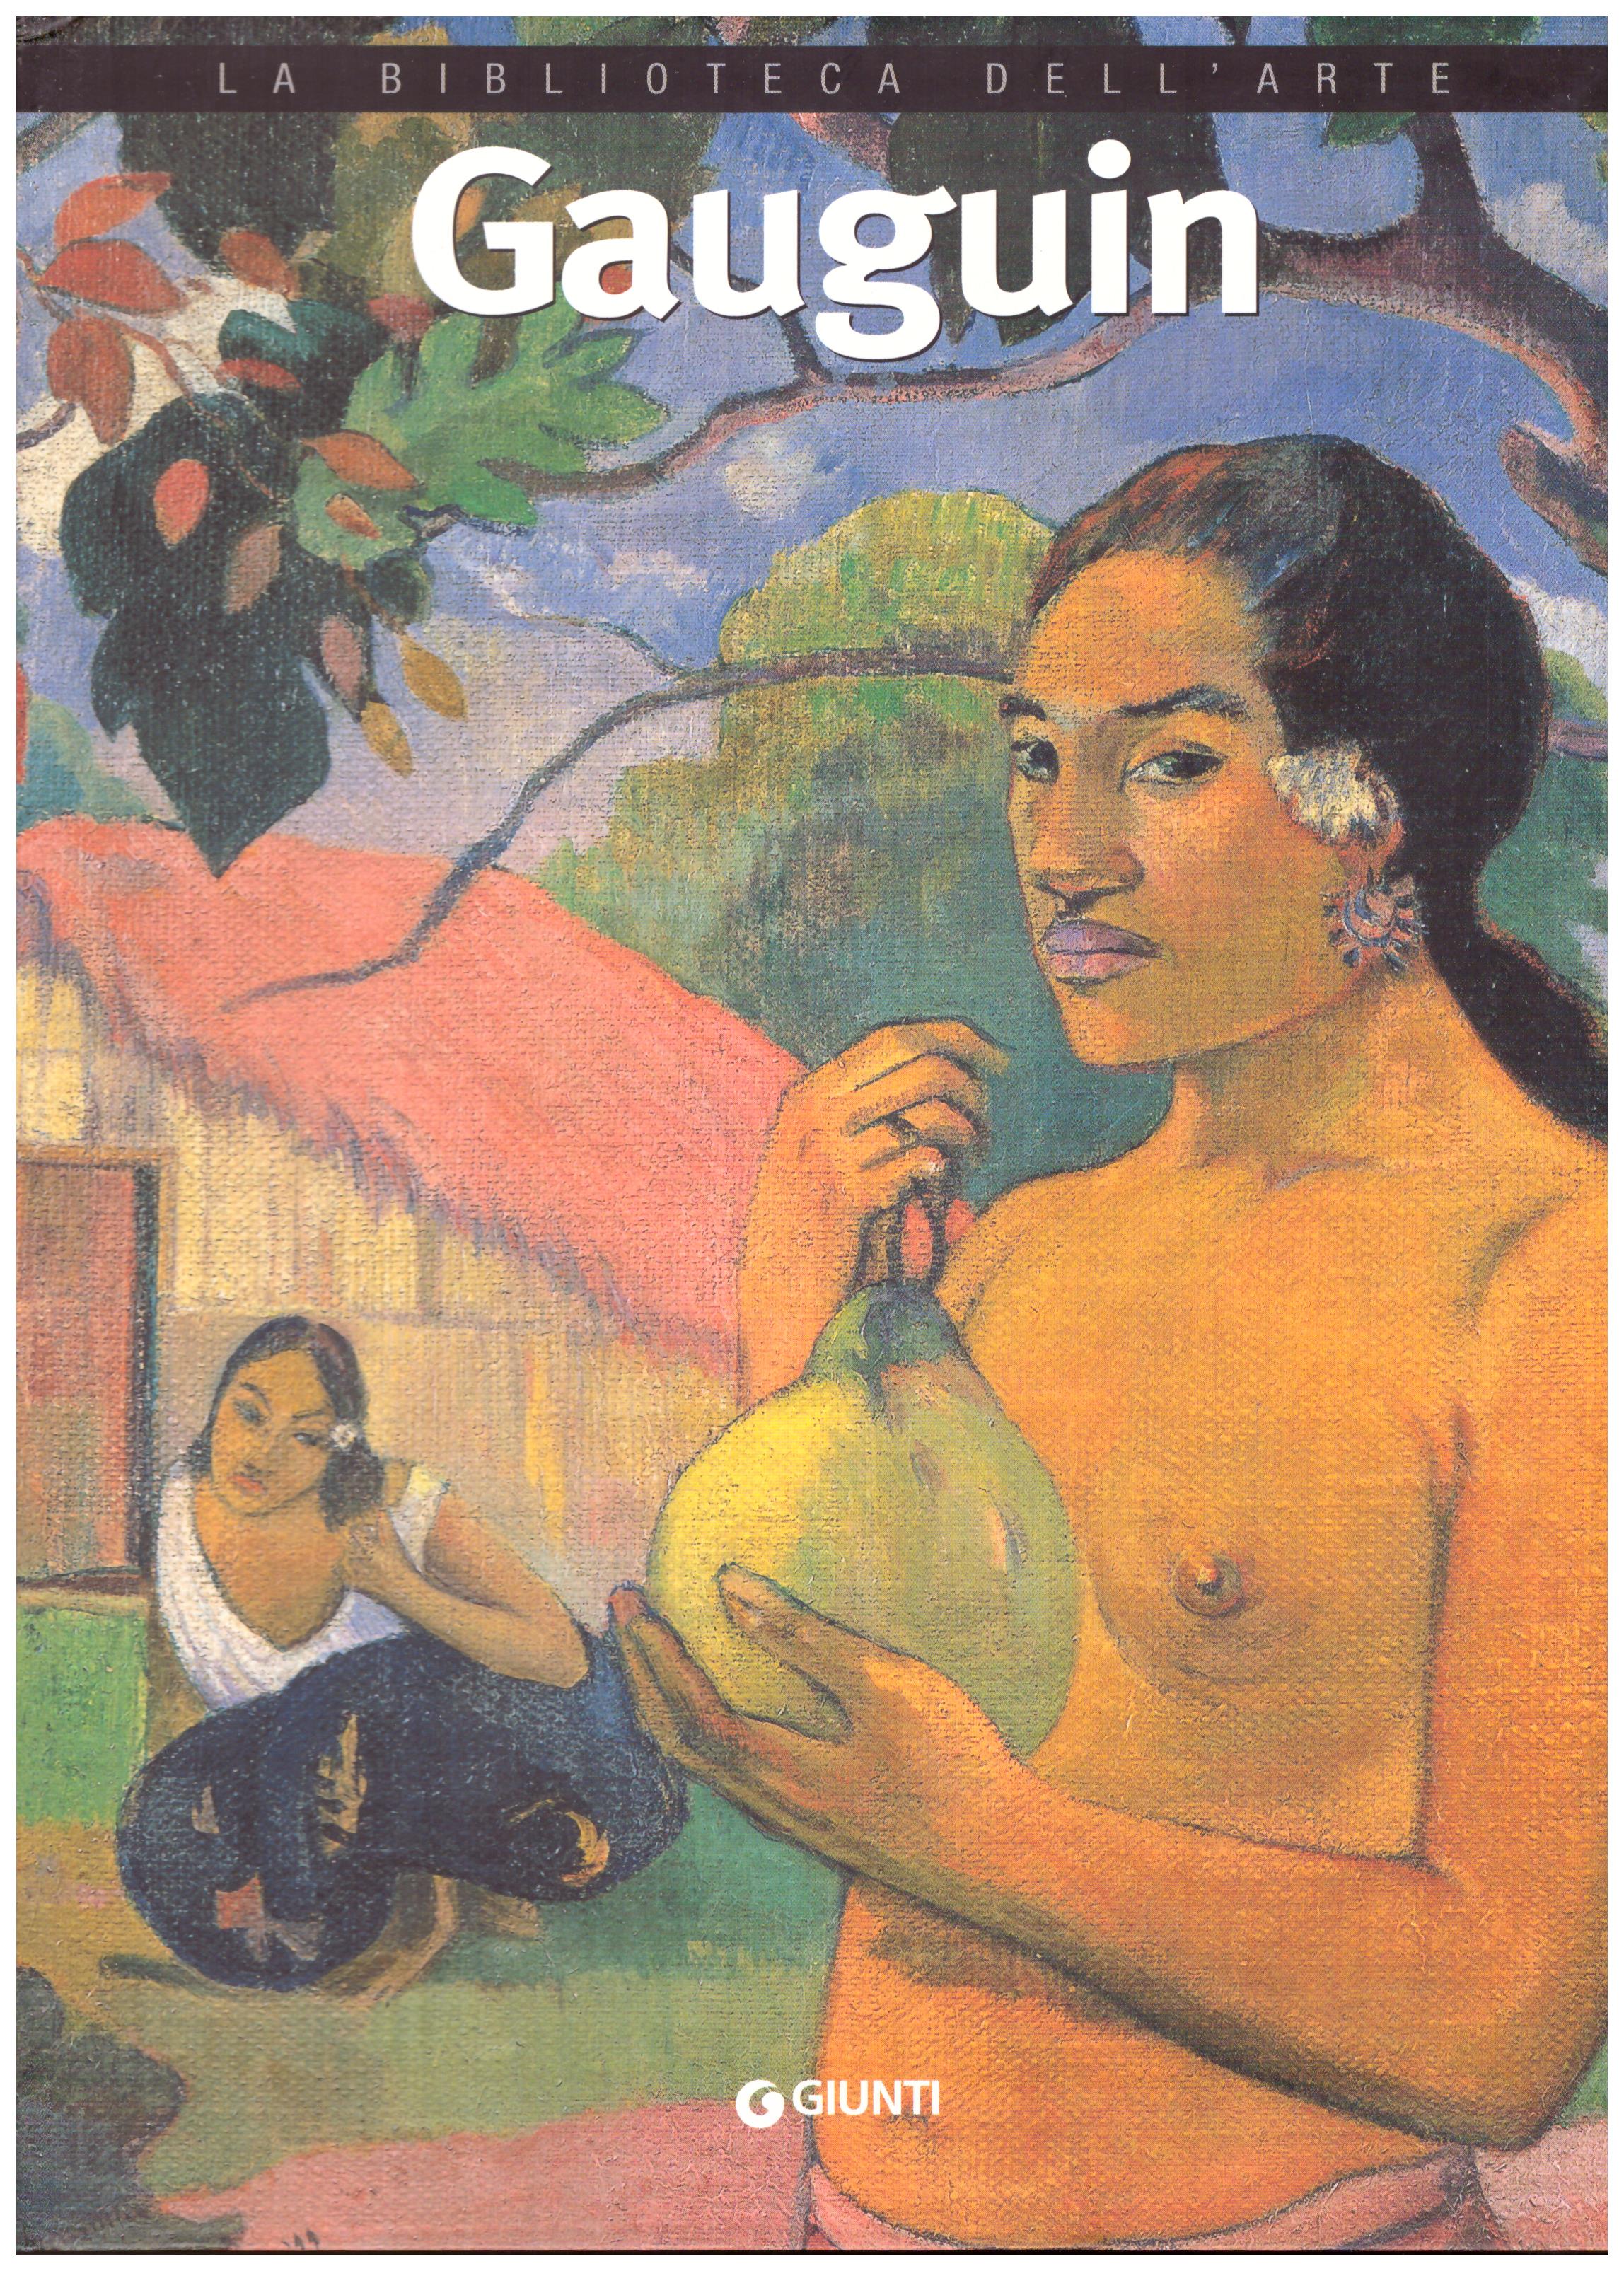 Titolo: La biblioteca dell'arte, Gauguin    Autore: AA.VV.      Editore: Giunti